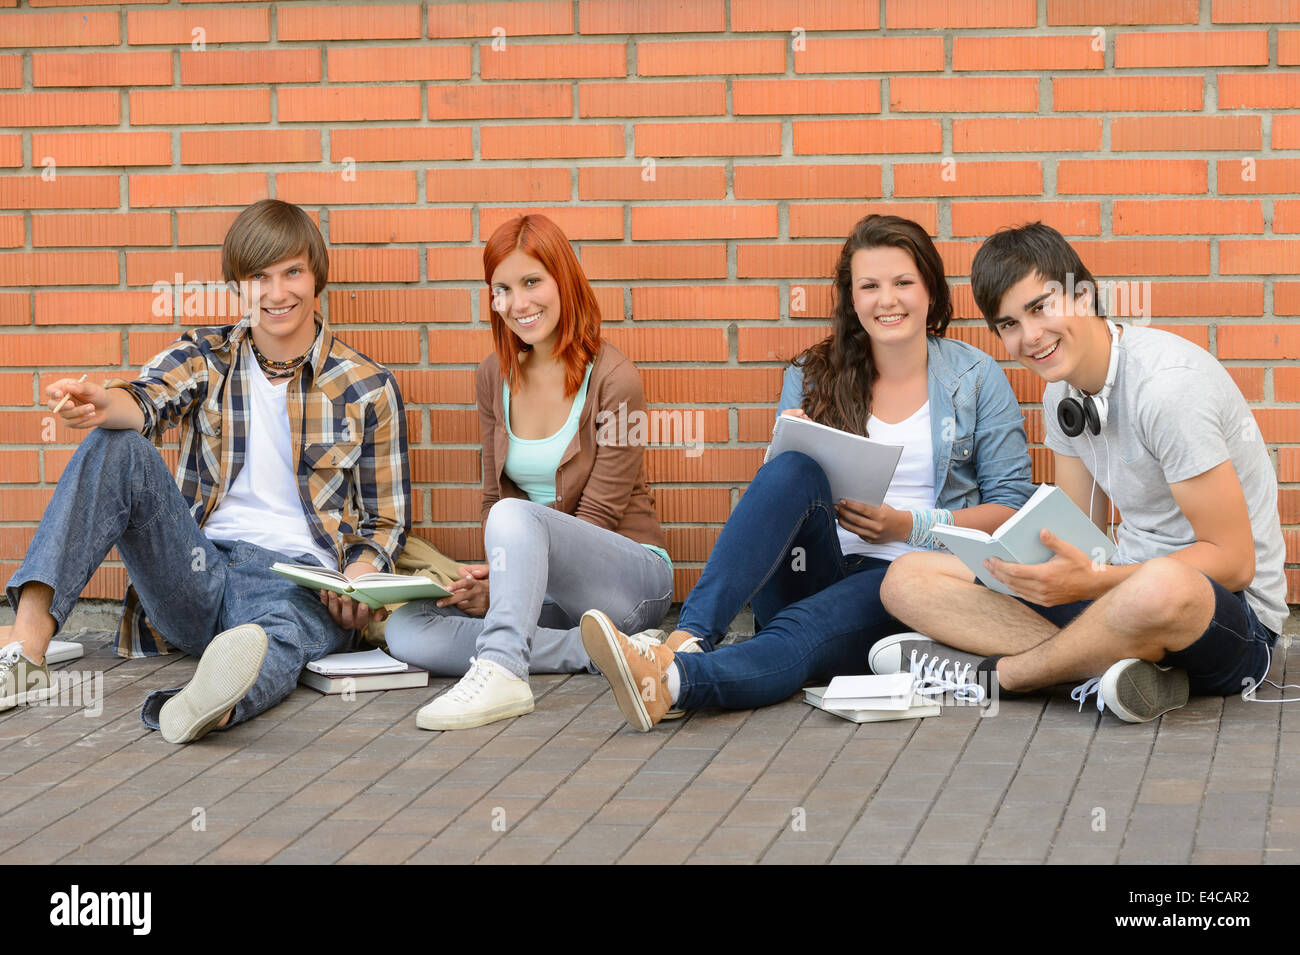 Les élèves du collège avec des livres assis par terre brick wall Banque D'Images